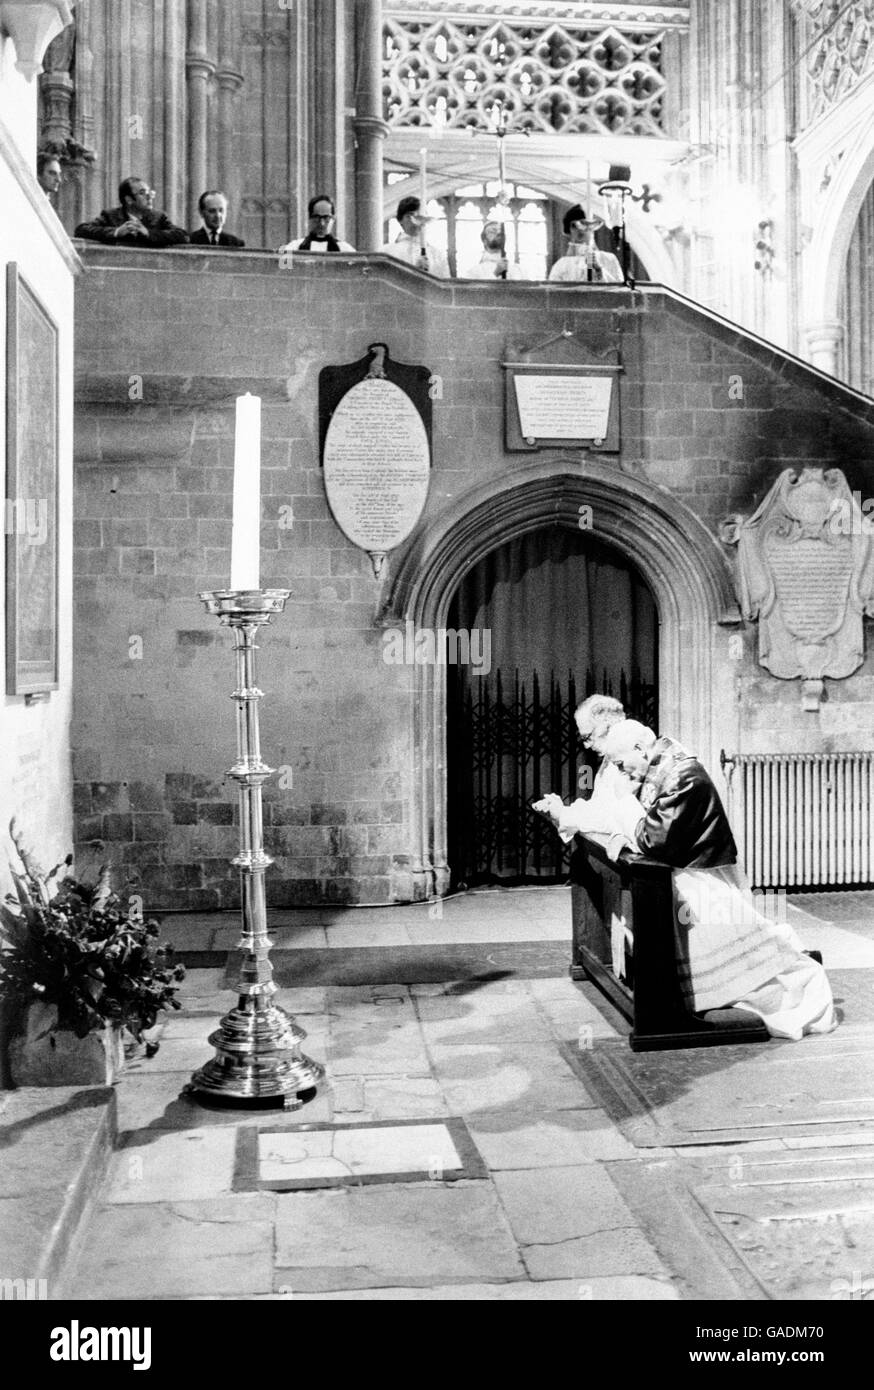 Le pape Jean-Paul II et l'archevêque de Canterbury, le Dr Robert Runcie, s'agenouillent à la cathédrale de Canterbury où Thomas a'Beckett a été assassiné sur instruction d'Henry II en 1170. Thomas, saint et martyr, fut archevêque de Canterbury, son sanctuaire est devenu un lieu de pèlerinage. Banque D'Images